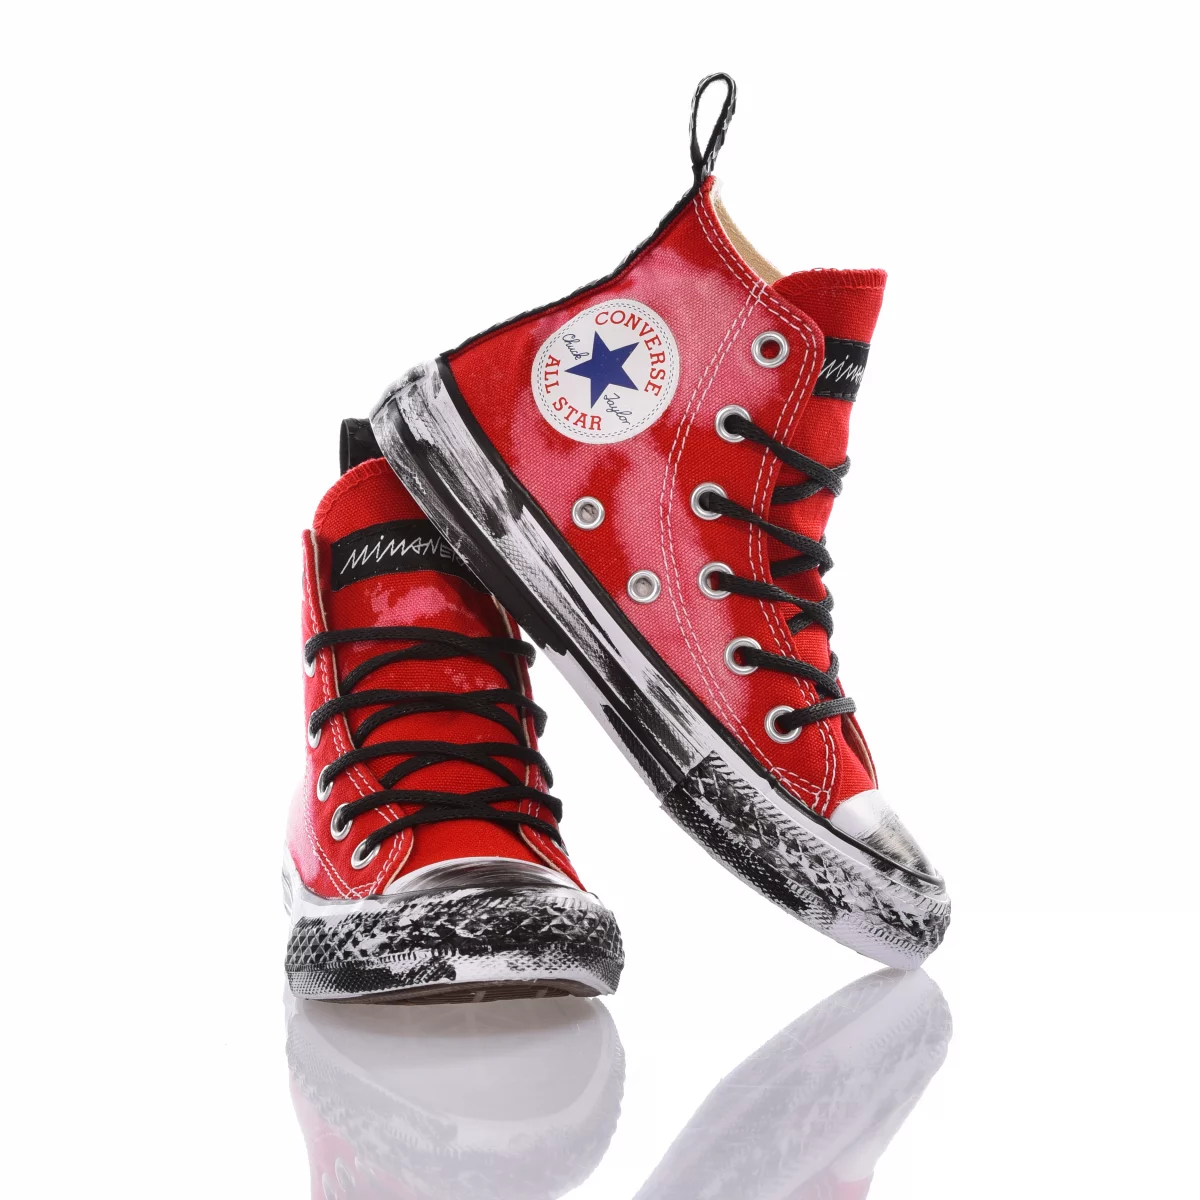 Converse Junior Bleached personalizzate bambino scarpe mimanera Red